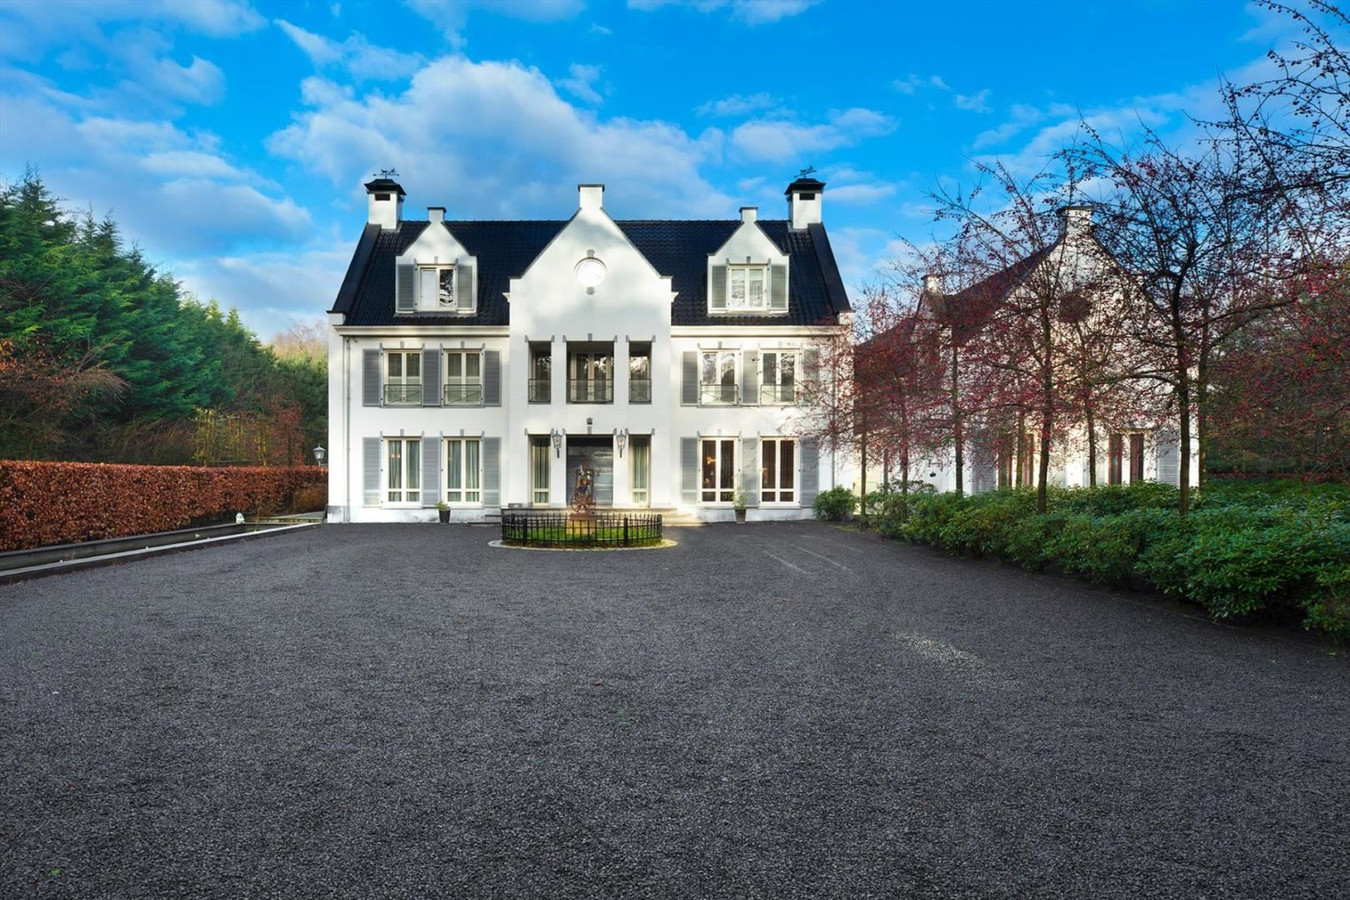 Margaret Mitchell Vol Vegen Dit zijn de tien duurste villa's die te koop staan in Brabant: wie ze niet  kan betalen, kan ze hier toch van binnen bekijken | Foto | bd.nl